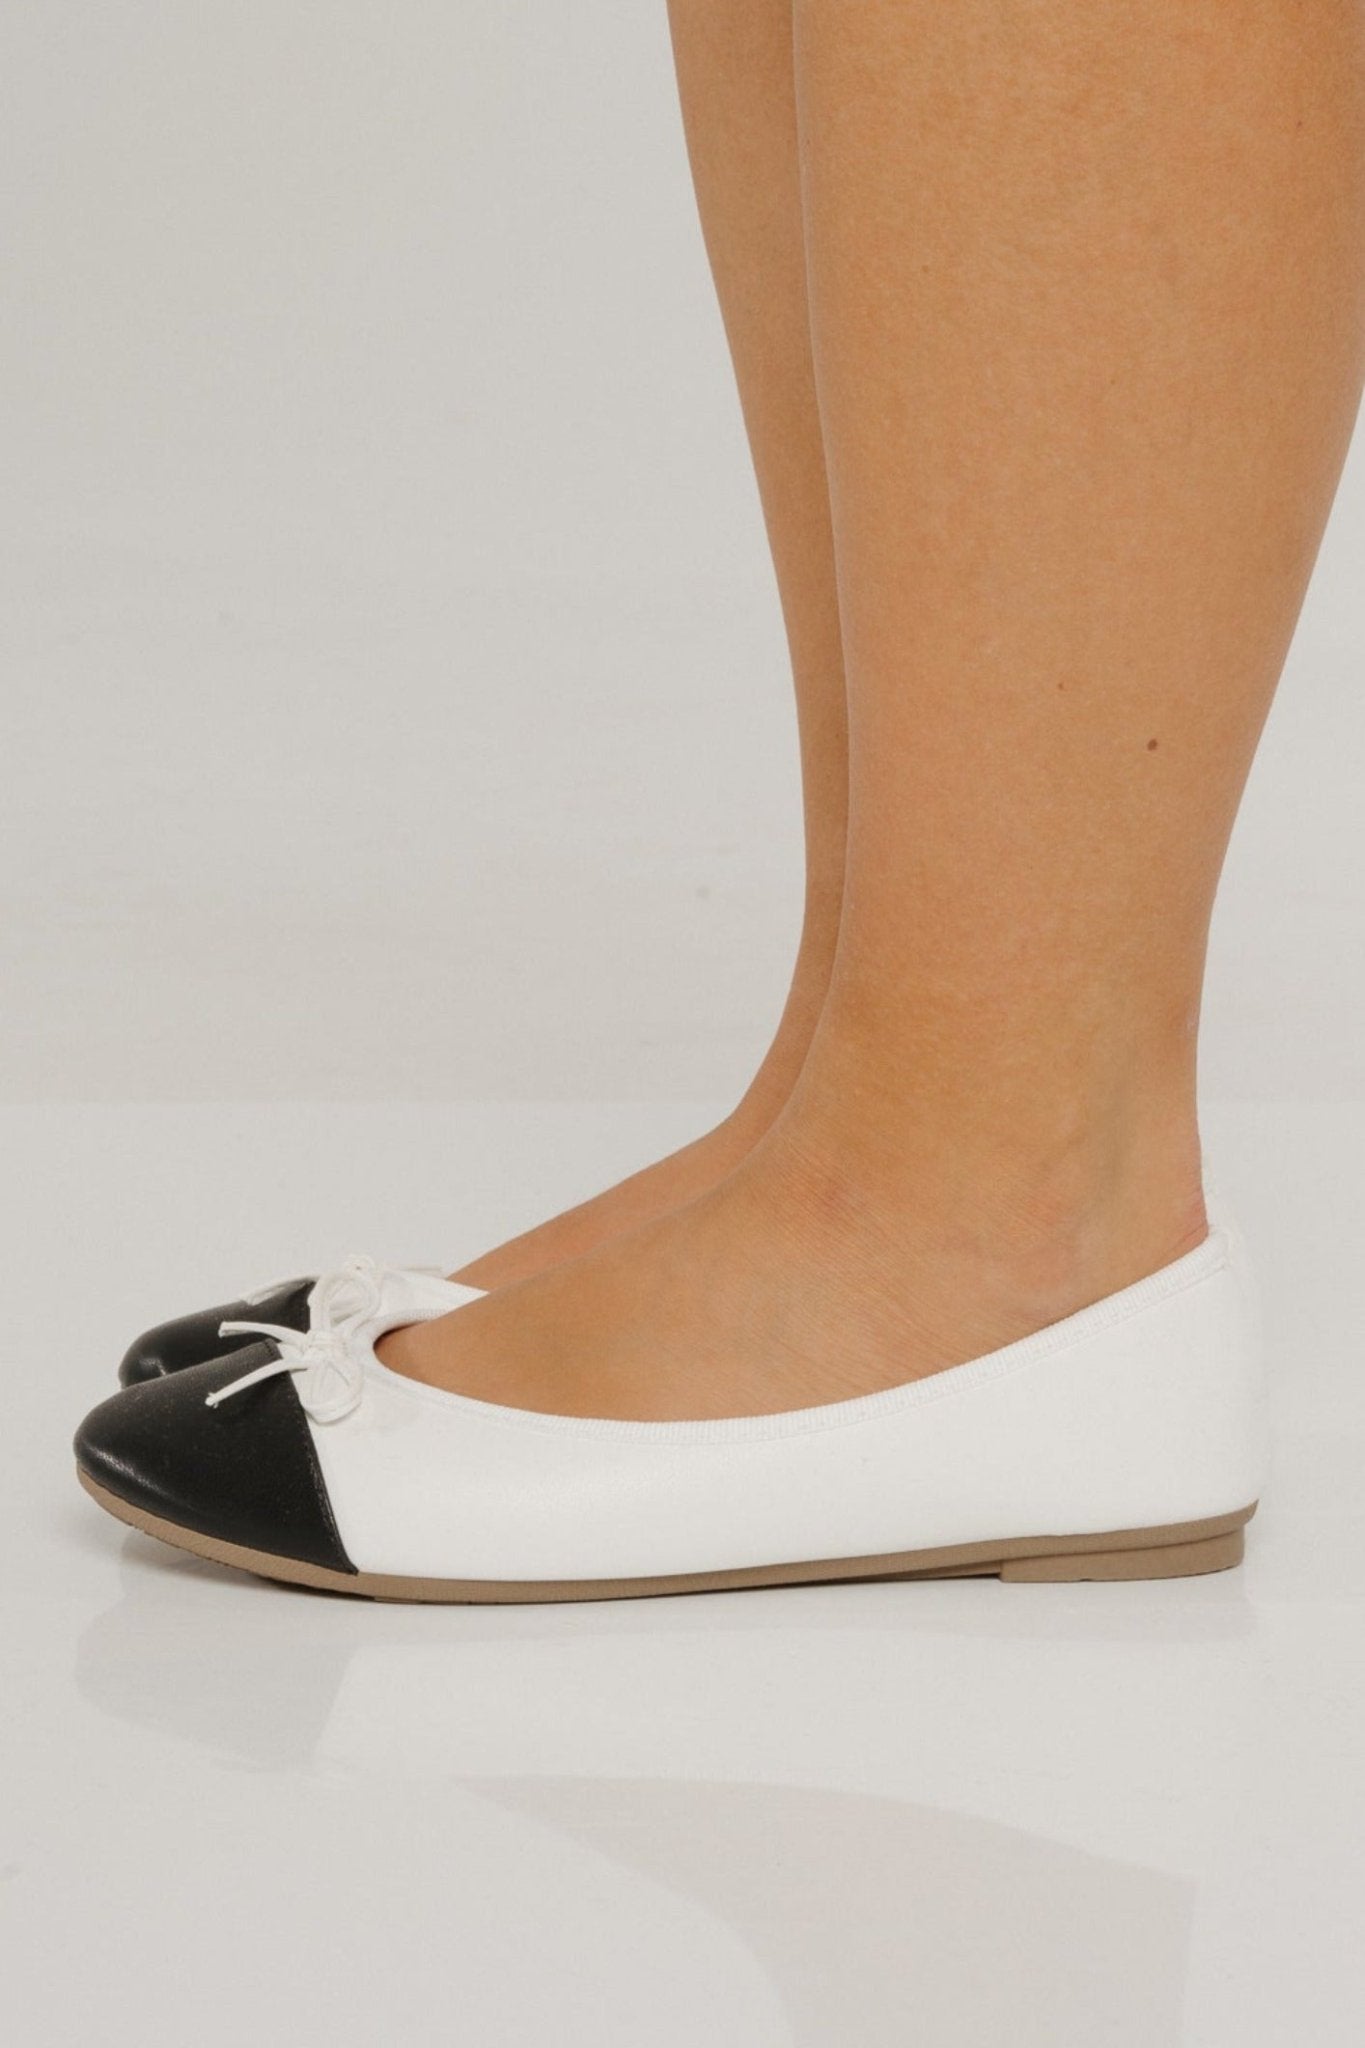 Sadie Black Toe Pumps In White - The Walk in Wardrobe